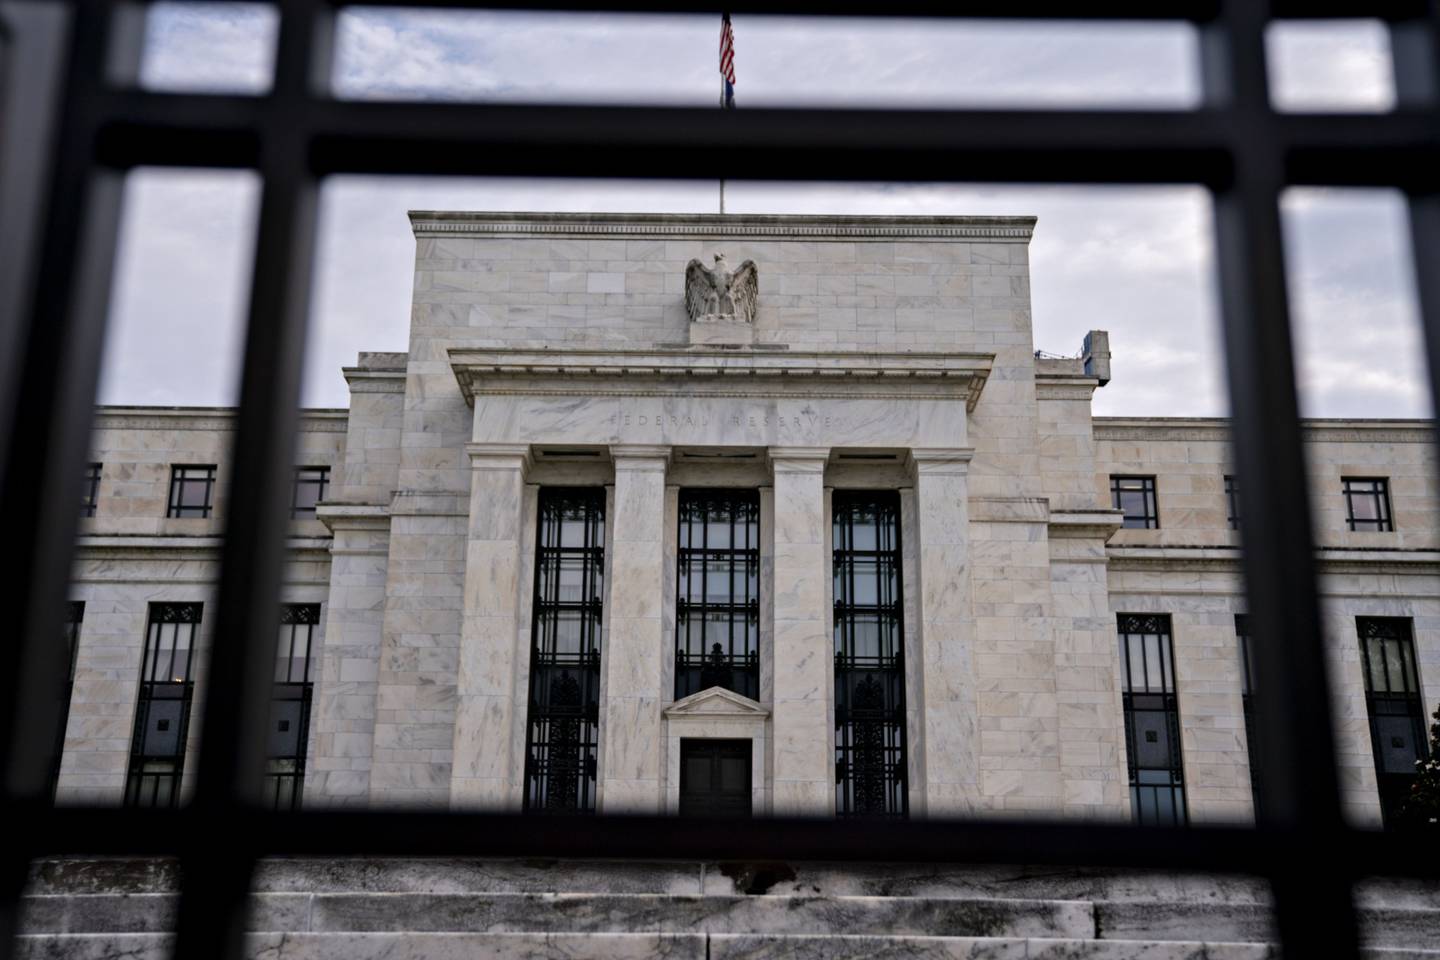 Ata confirmou o apoio da maioria das autoridades para continuar os aumentos de juros pelo menos nas próximas duas reuniões, com a batalha inflacionária longe de ser vencida